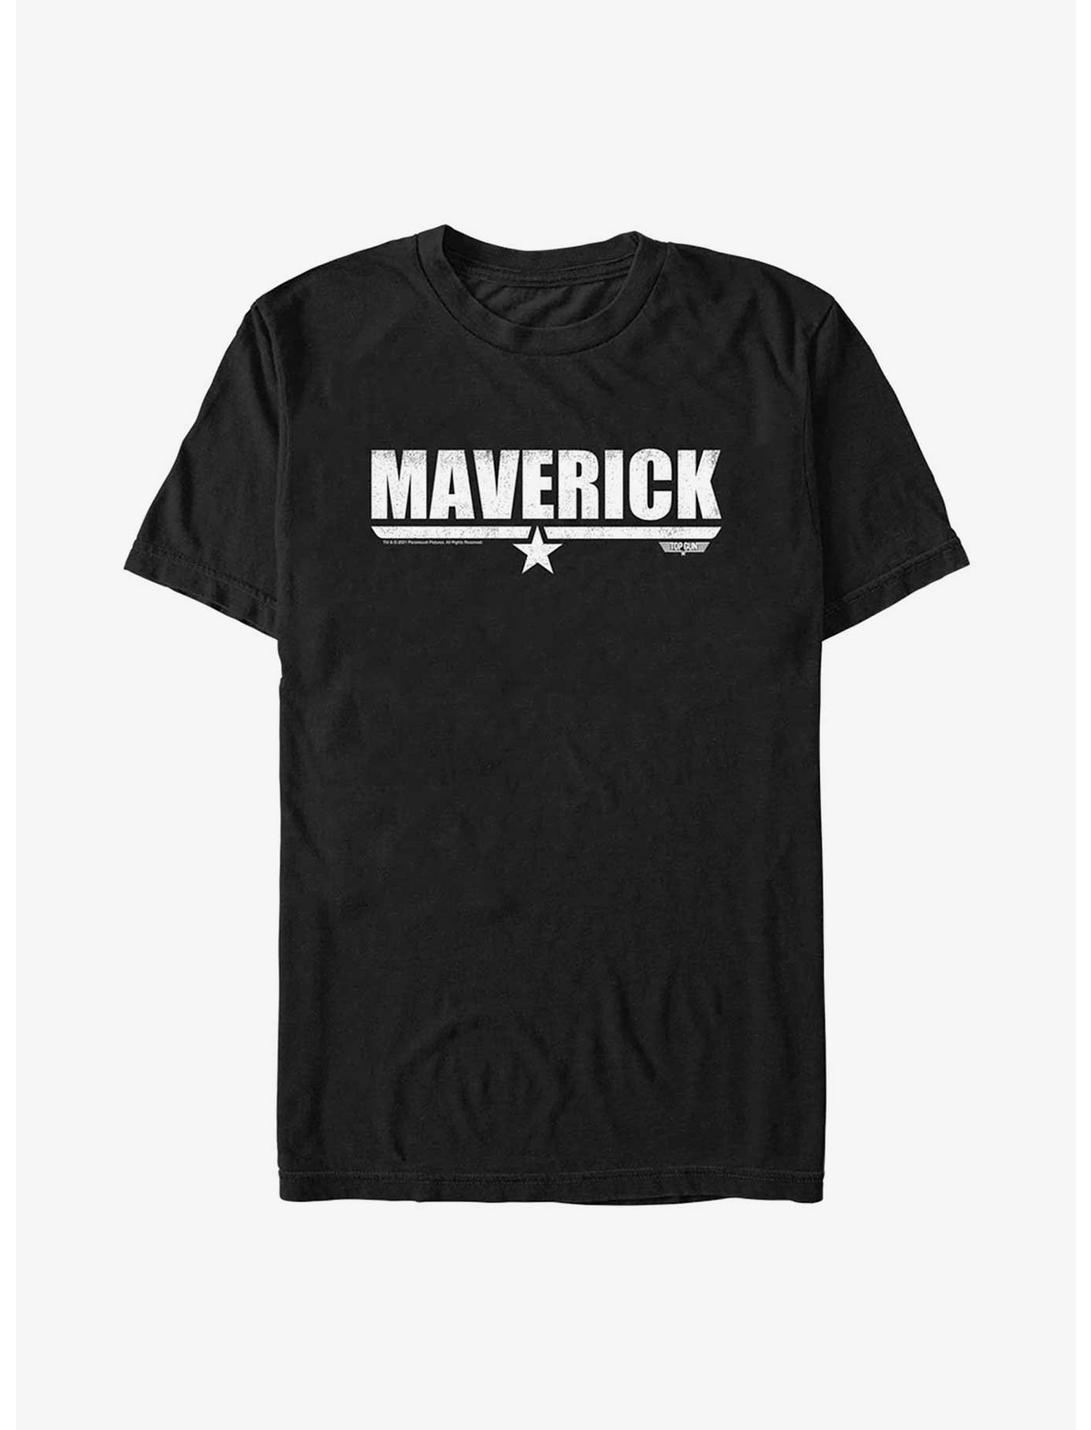 Top Gun: Maverick Logo T-Shirt, BLACK, hi-res